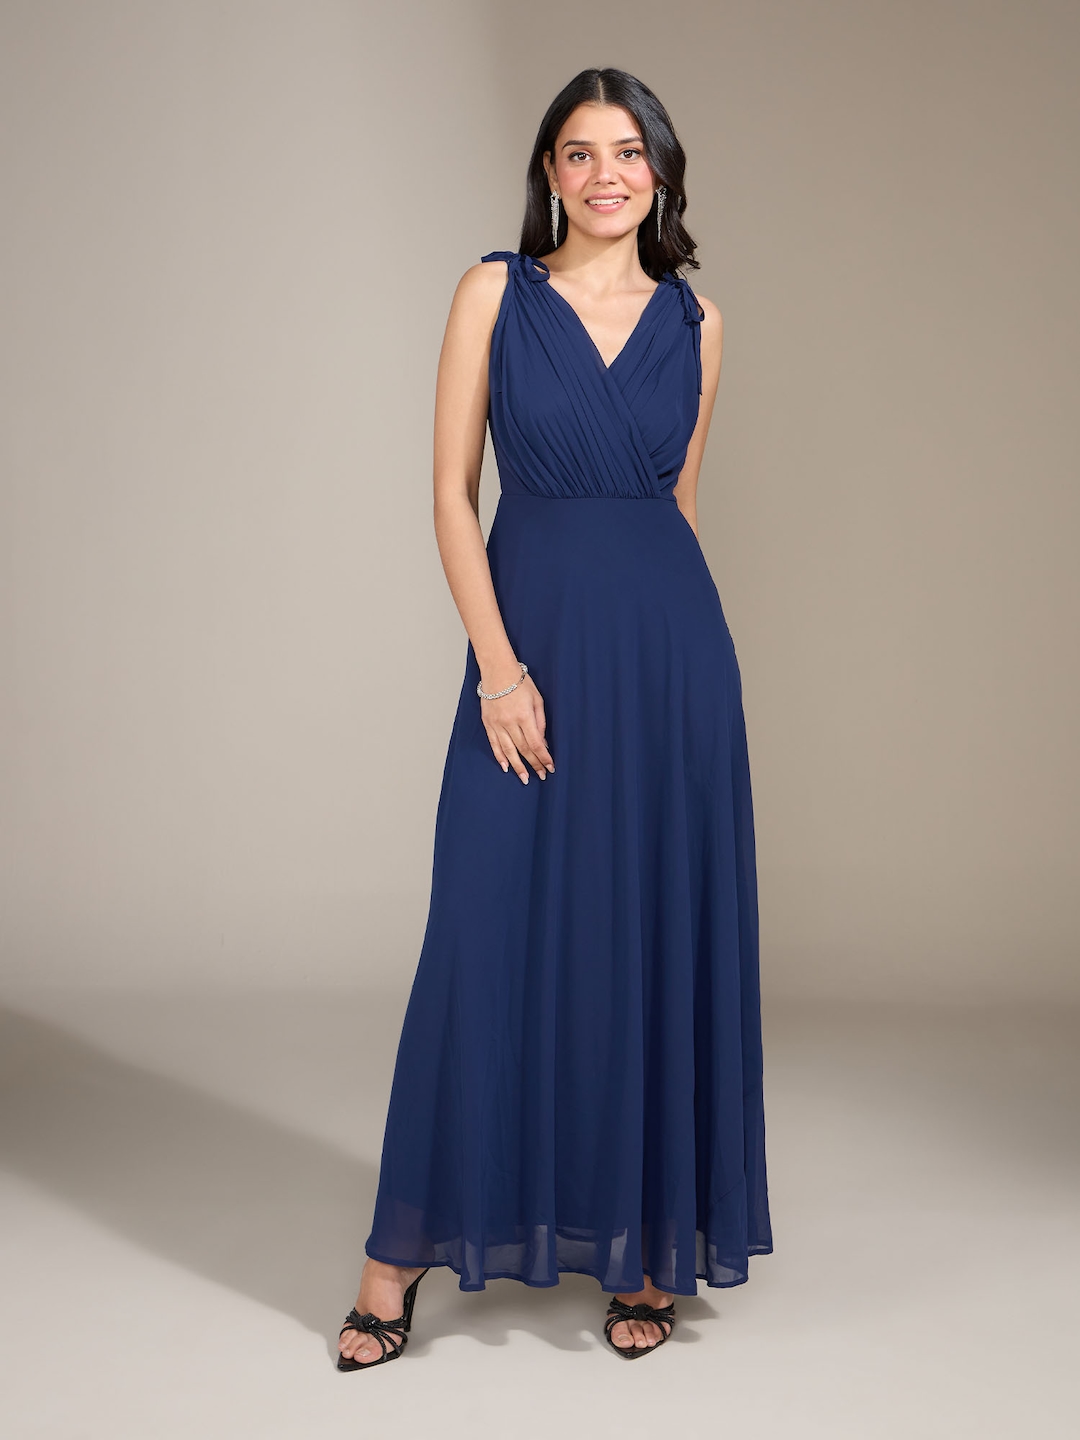 Buy 20Dresses Navy Blue V Neck Maxi Dress - Dresses for Women